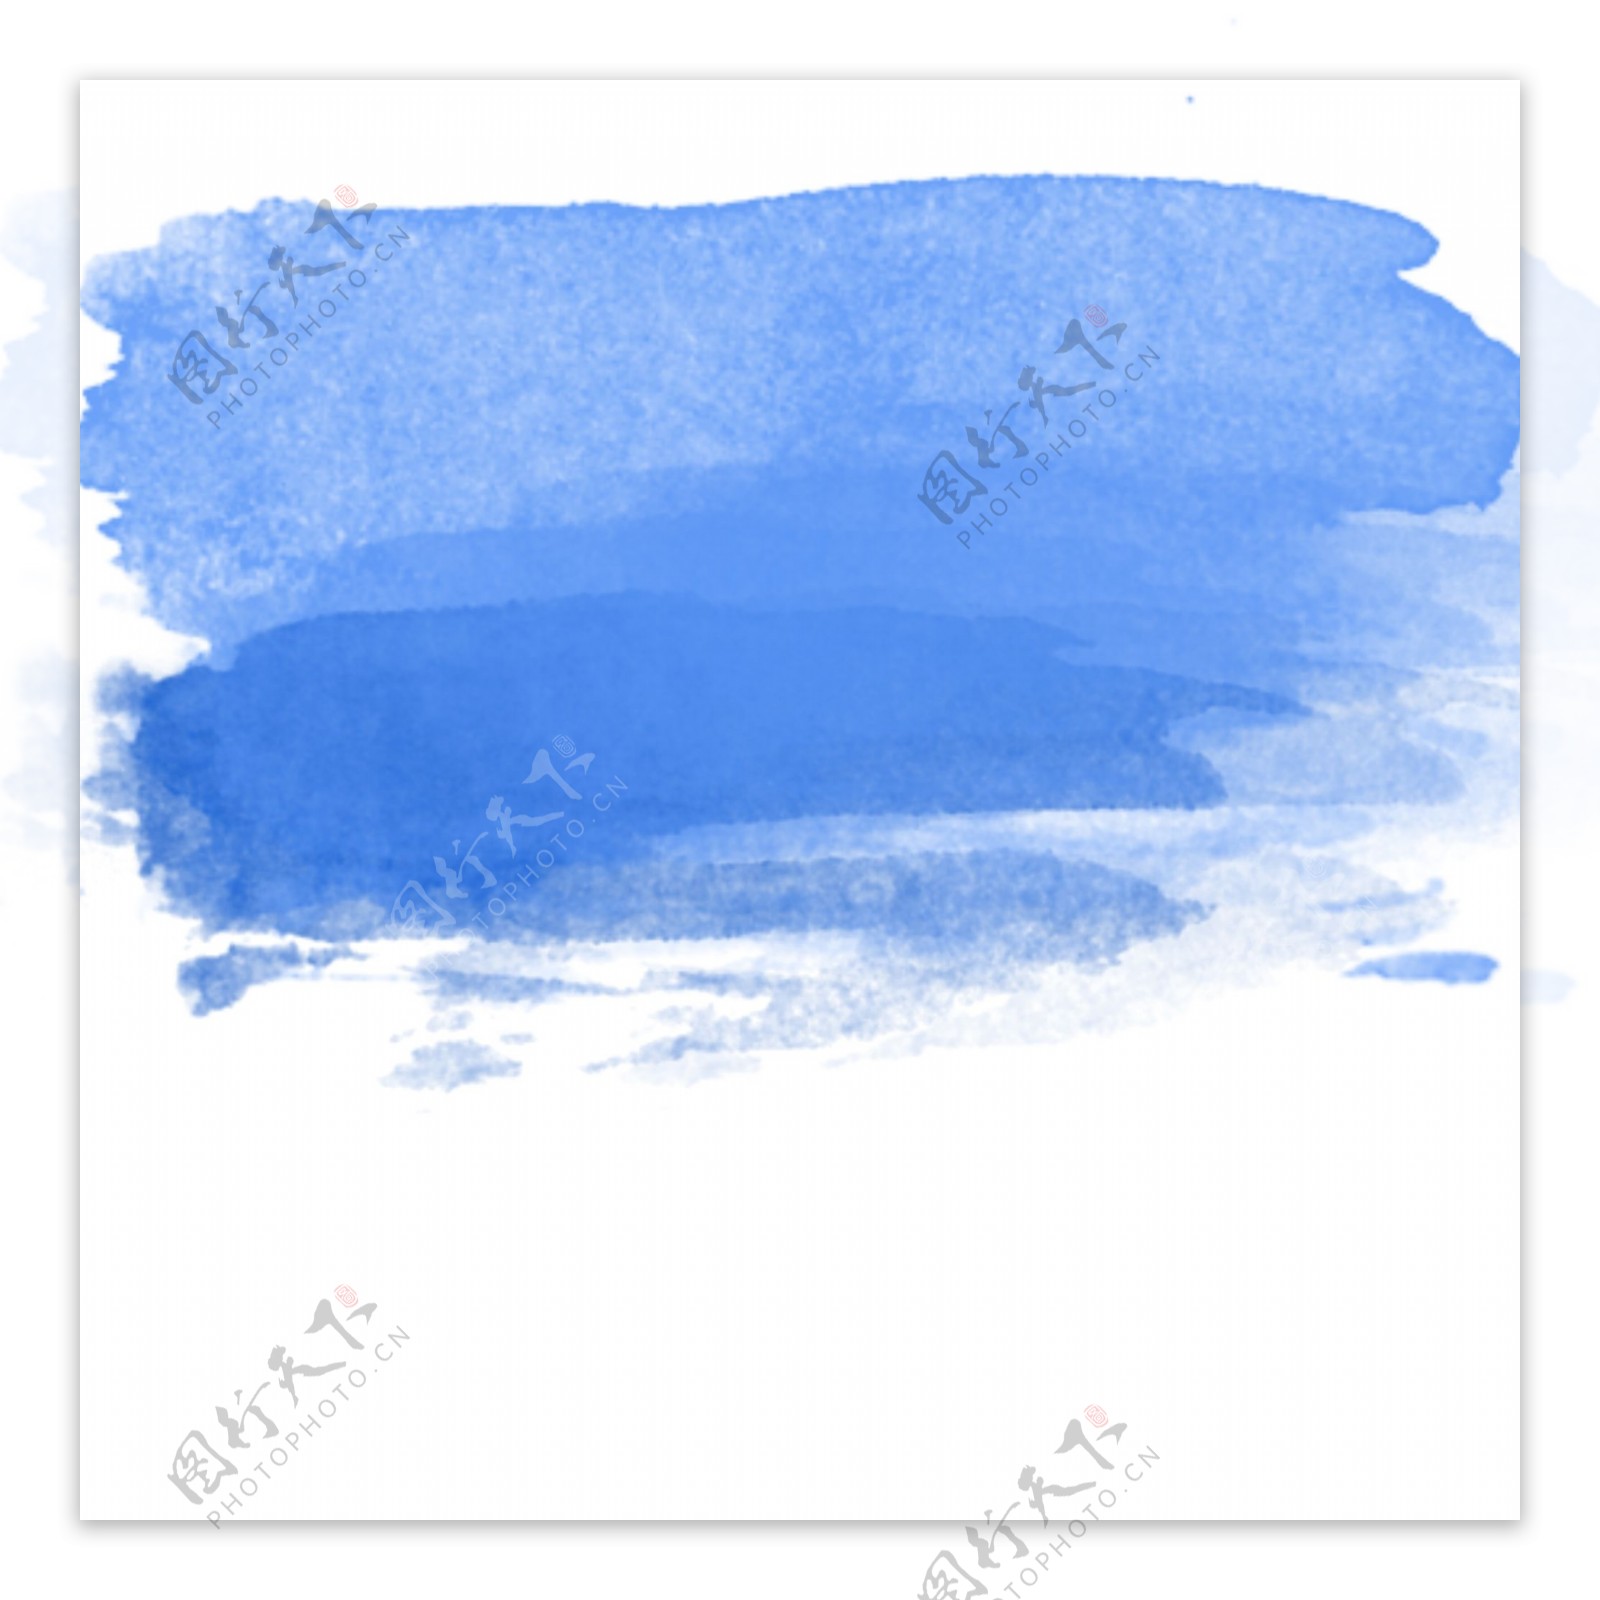 蓝色水彩痕迹效果元素